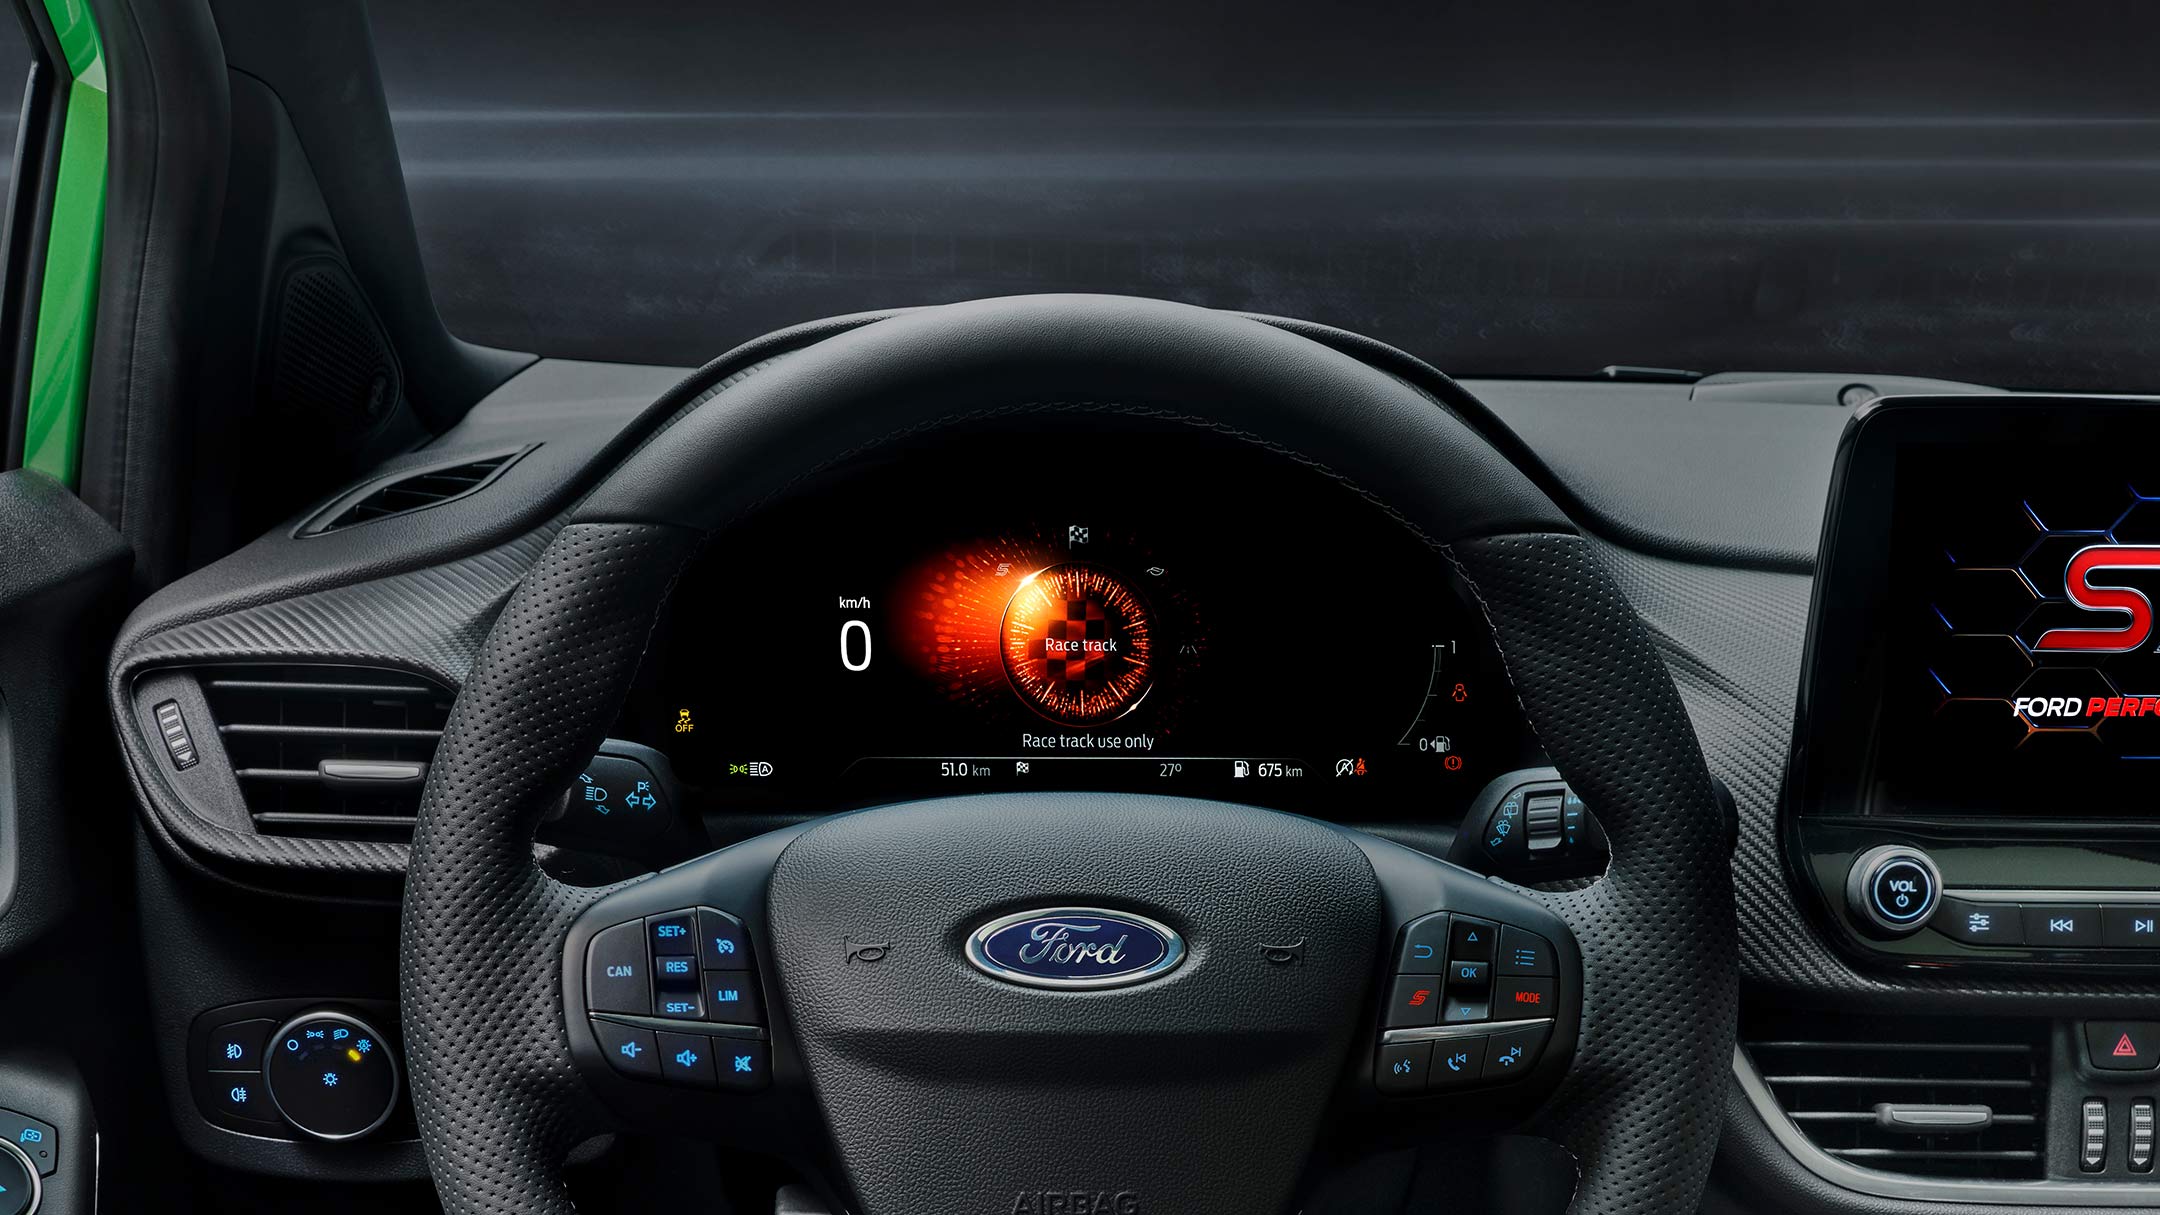 Ford Fiesta ST Innenraum. Detailansicht auf das Lenkrad und digitale Instrumententafel.